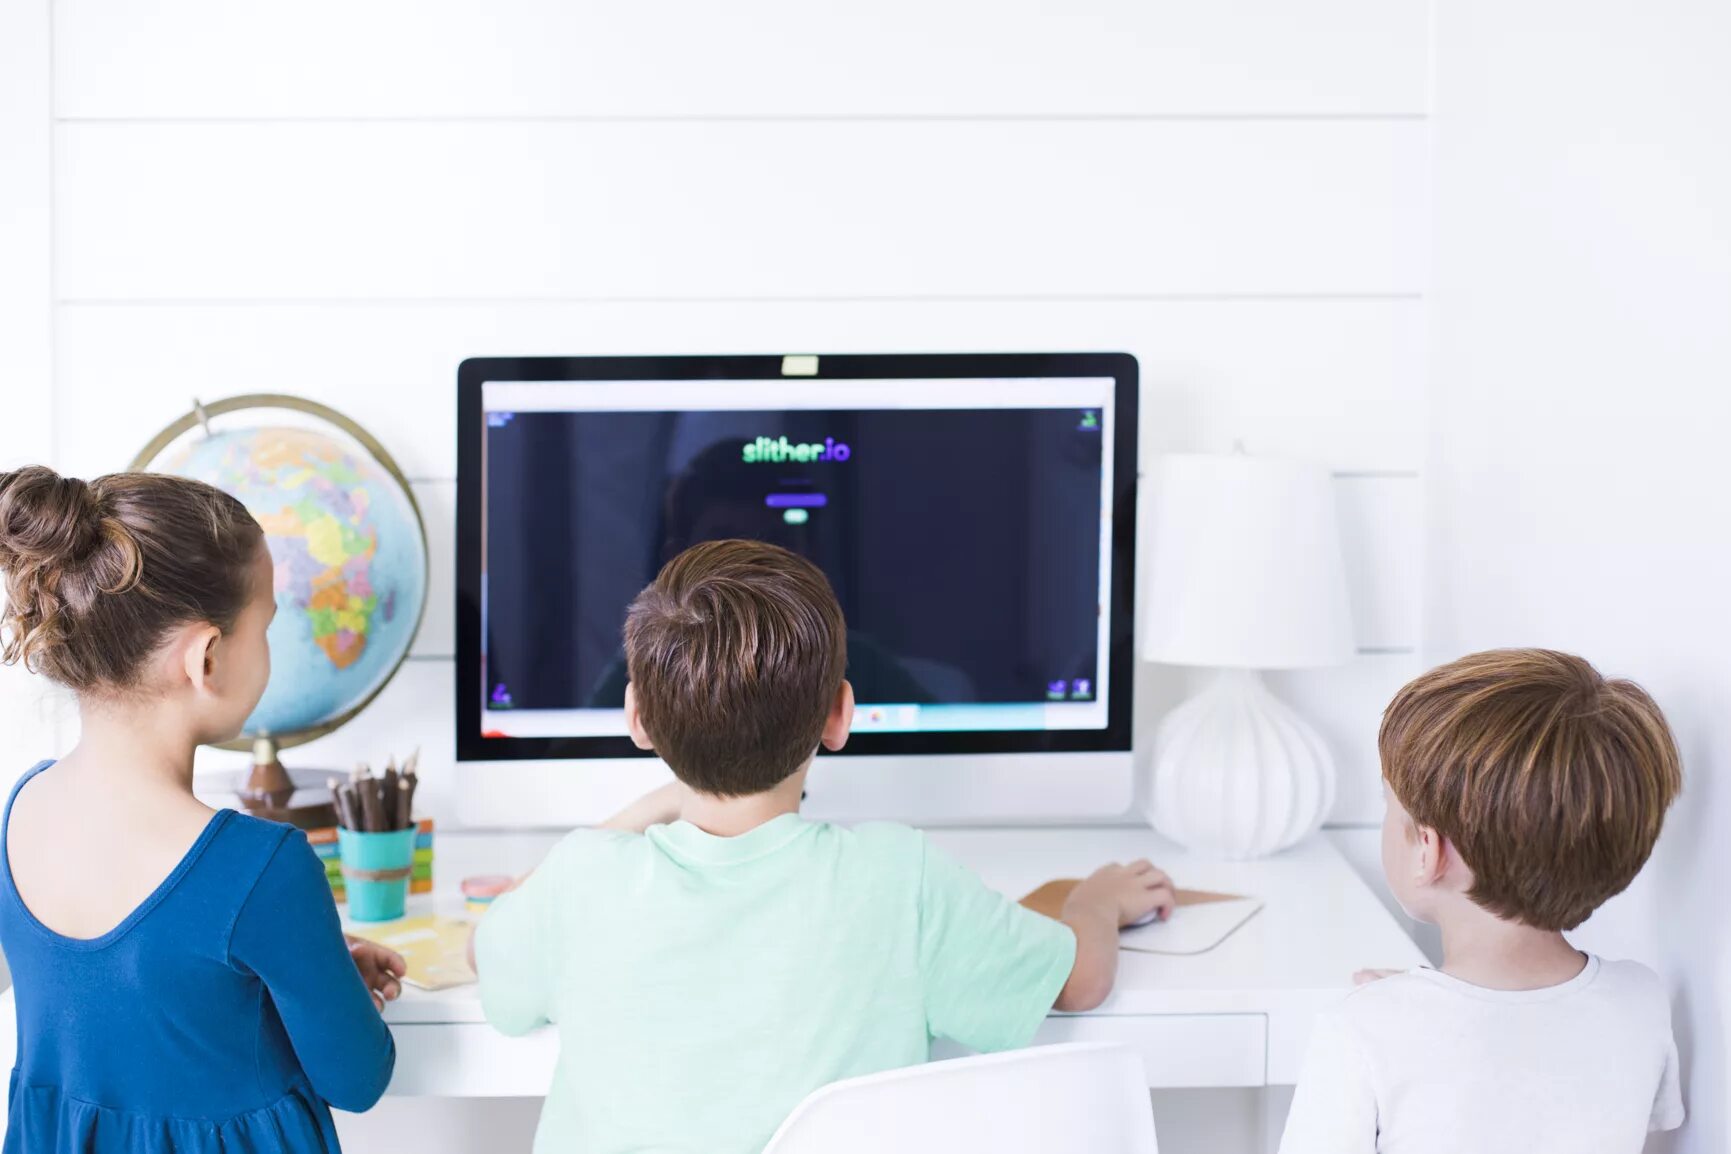 Новости интернета в малых. Компьютер для детей. Ребенок за компьютером. Маленький компьютер для детей. Счастливый ребенок за компьютером.